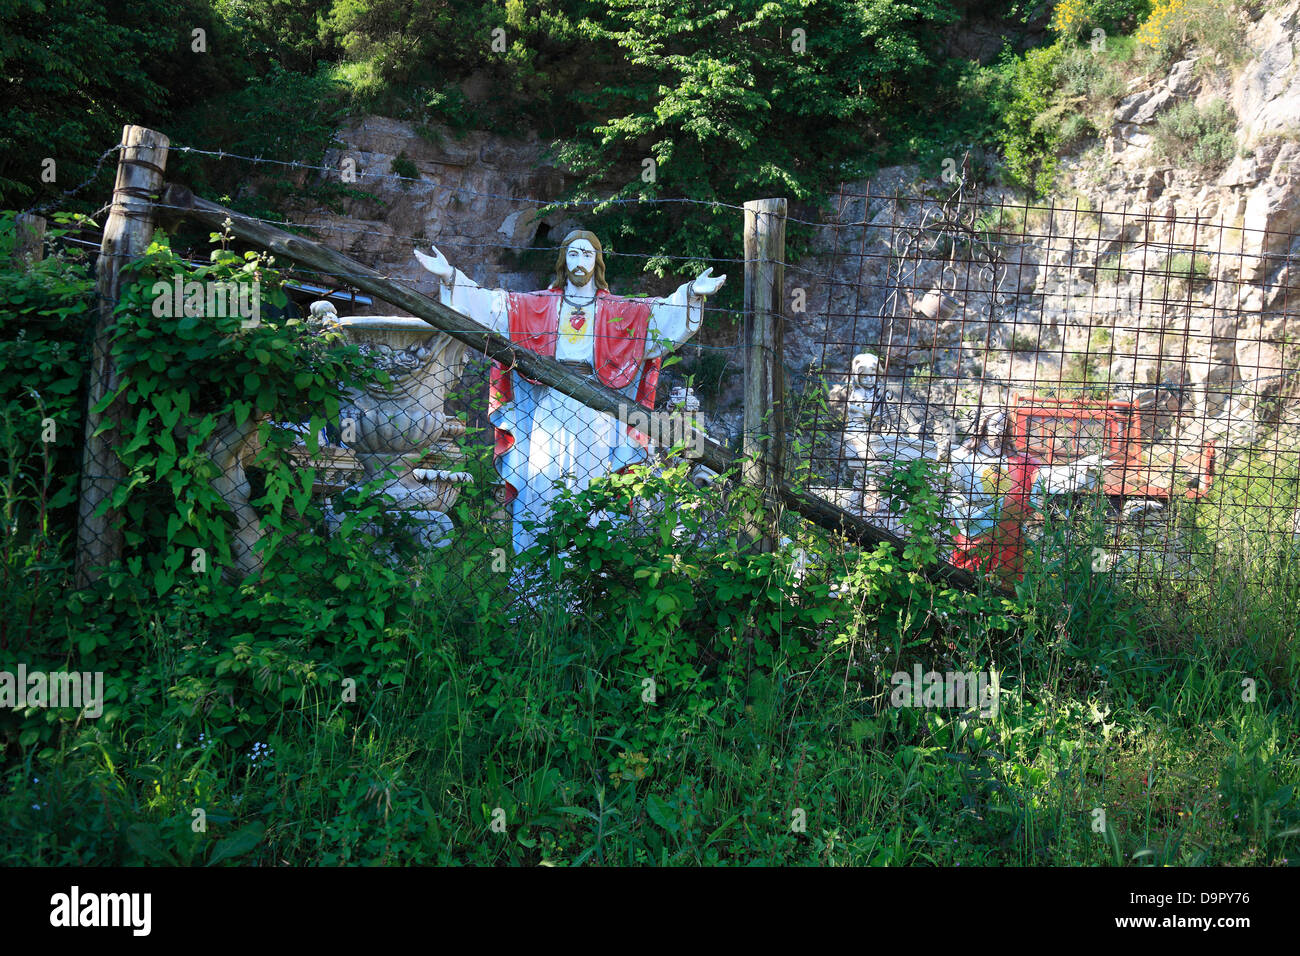 Santi sulla strada, dietro una recinzione, sulla penisola di Sorrento, campania, Italia Foto Stock